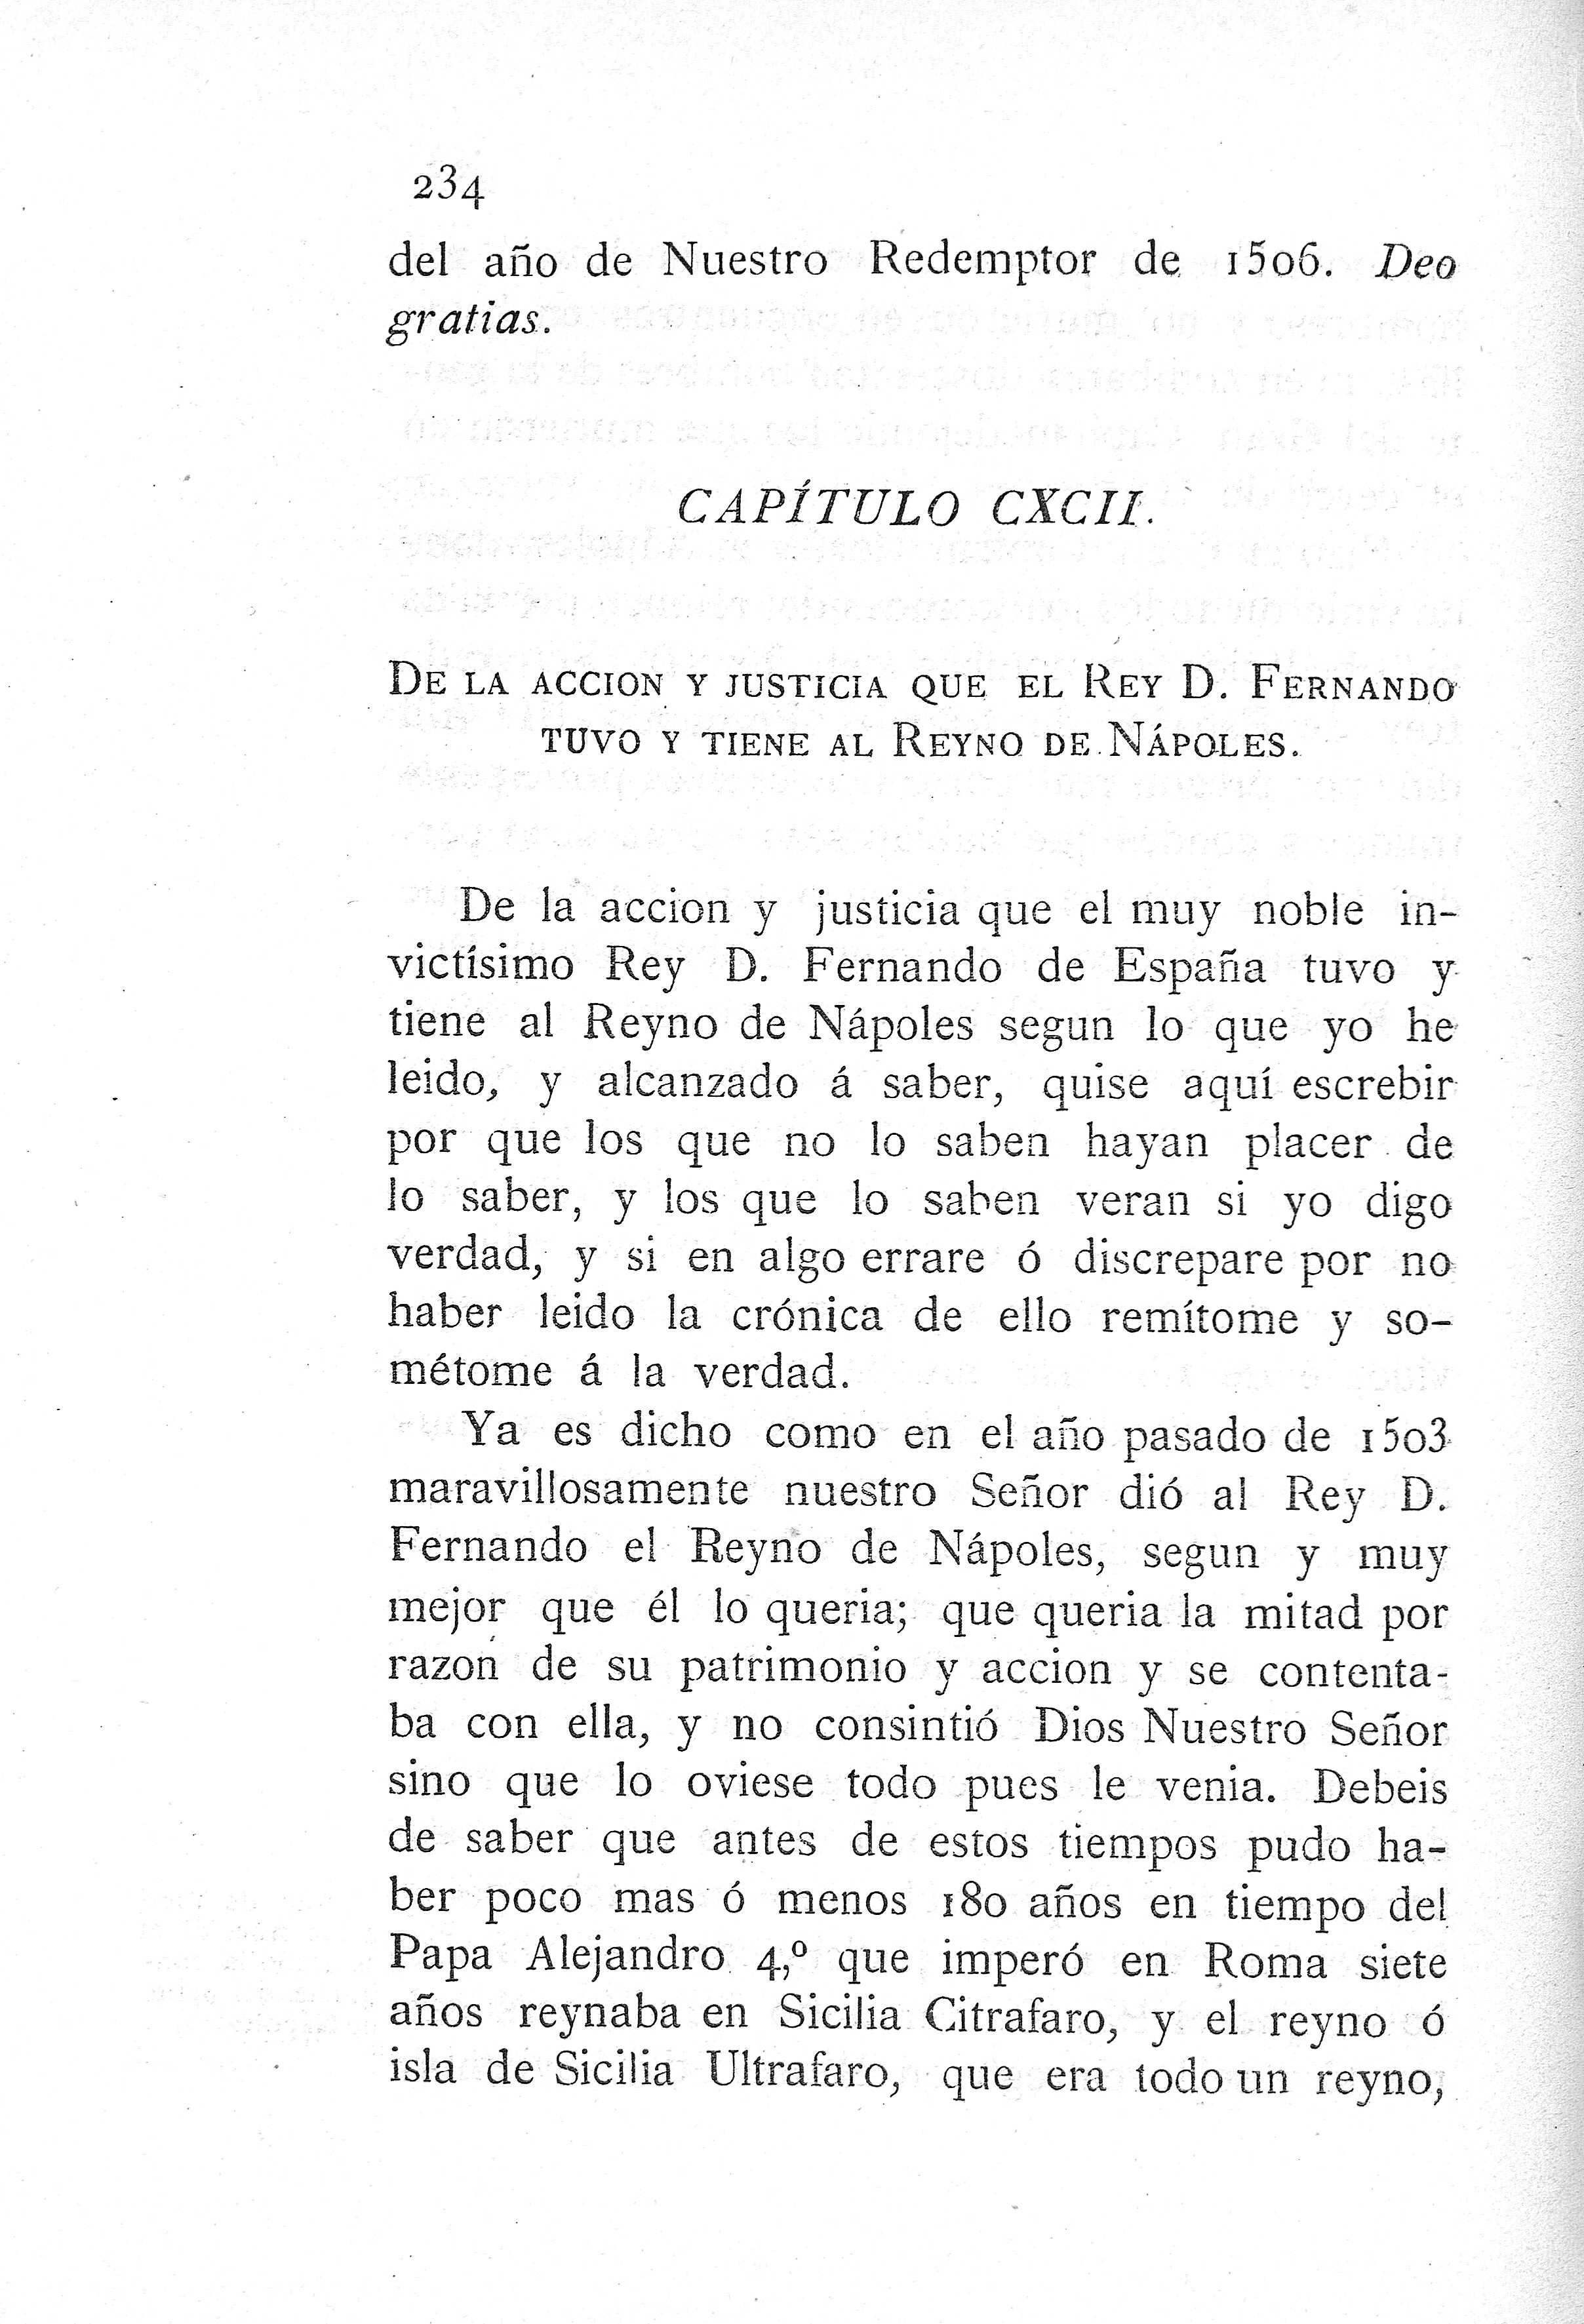 CXCII. De la acción y justicia que el Rey D. Fernando tuvo...